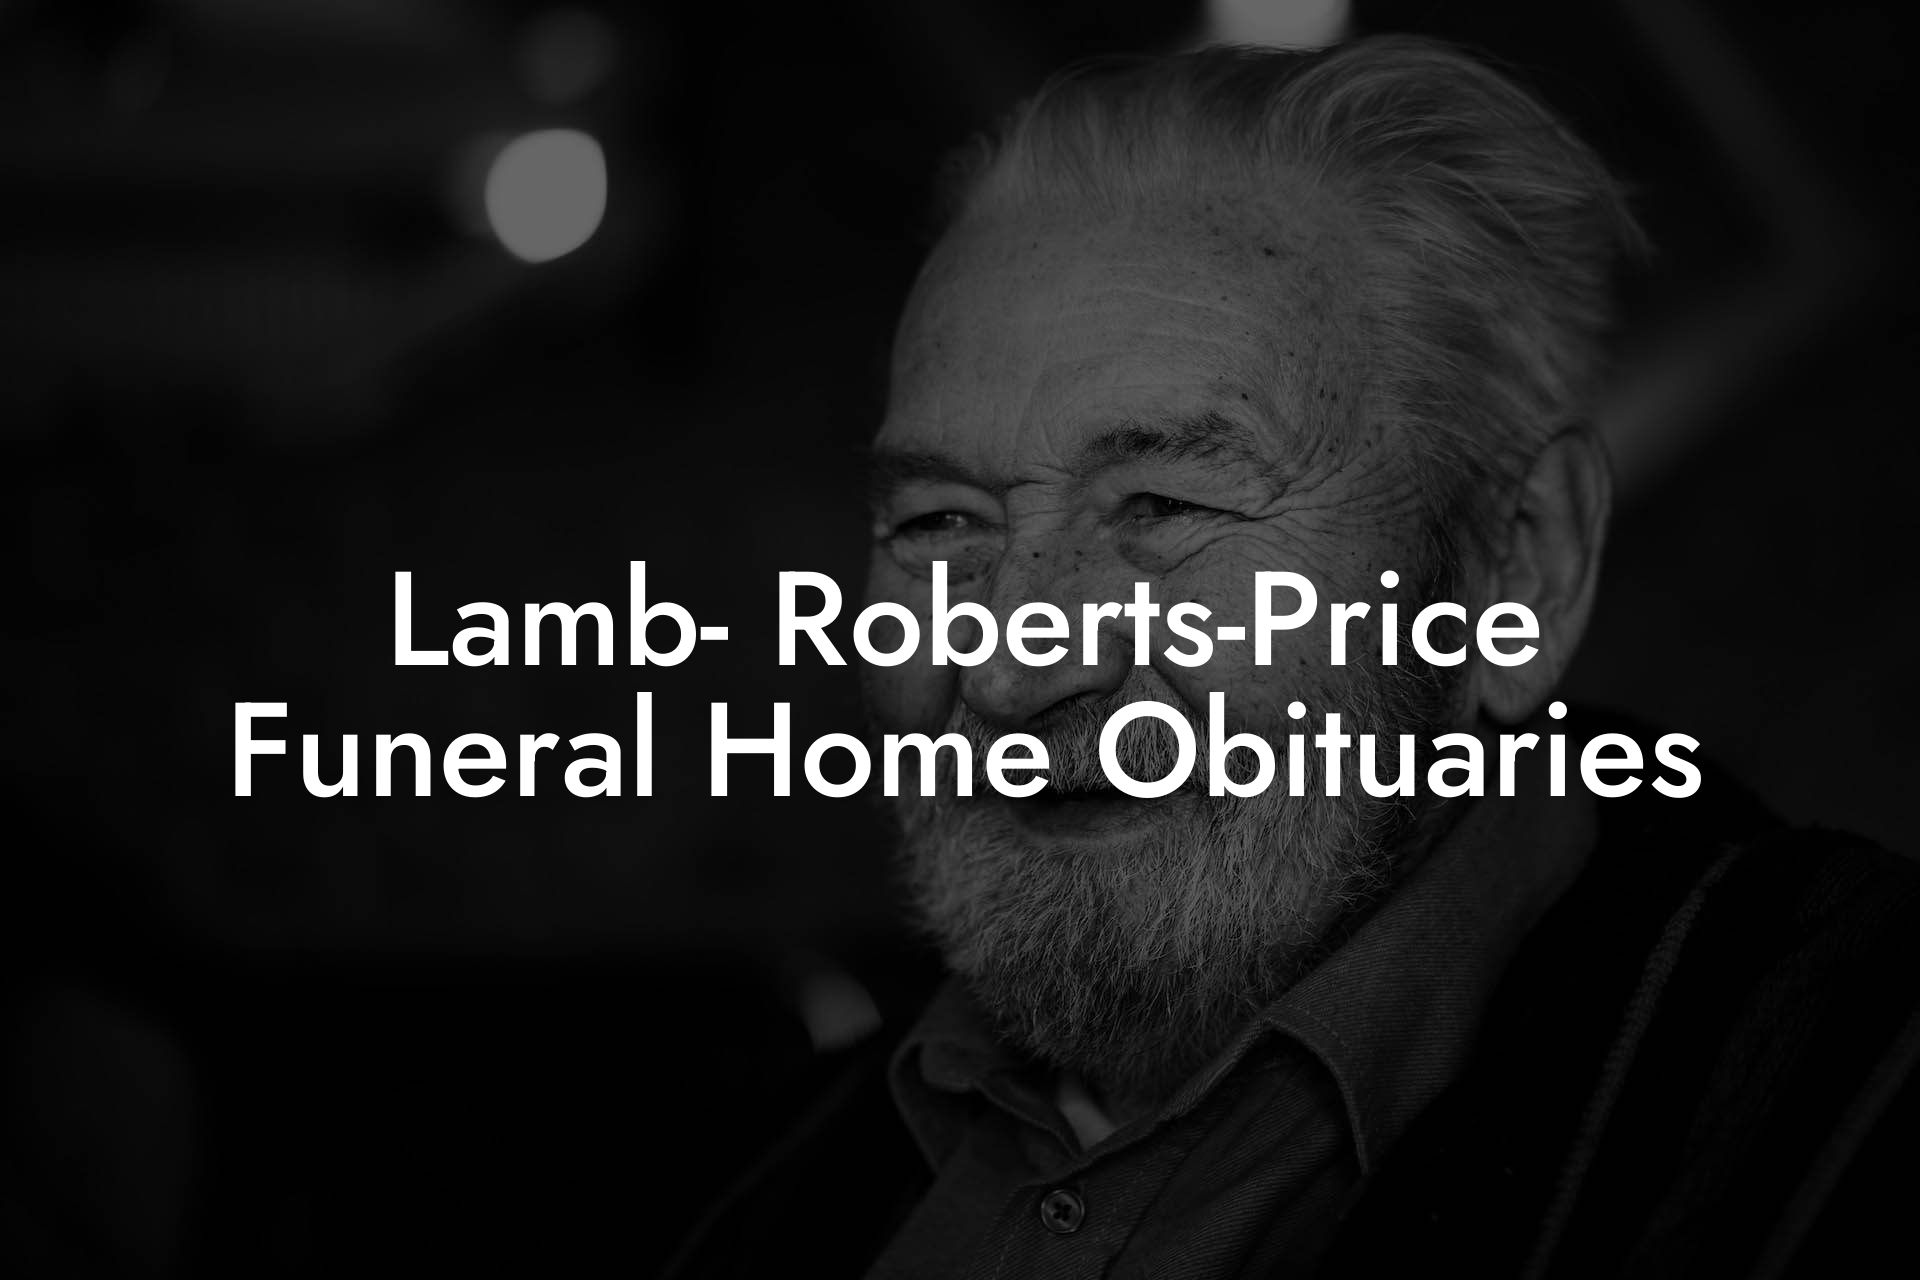 Lamb- Roberts-Price Funeral Home Obituaries